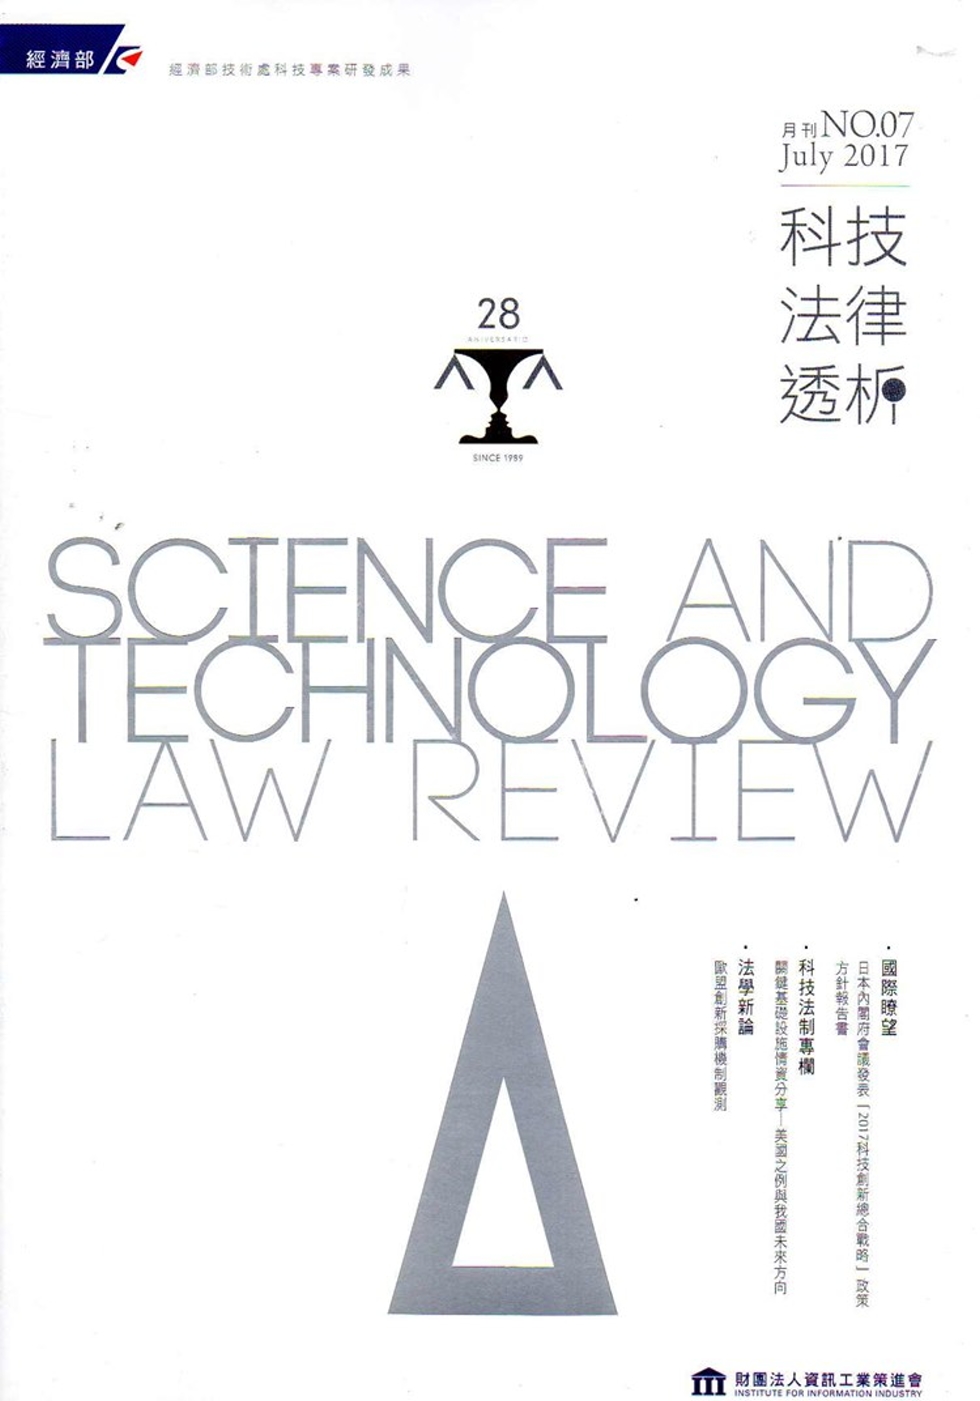 科技法律透析月刊第29卷第07期